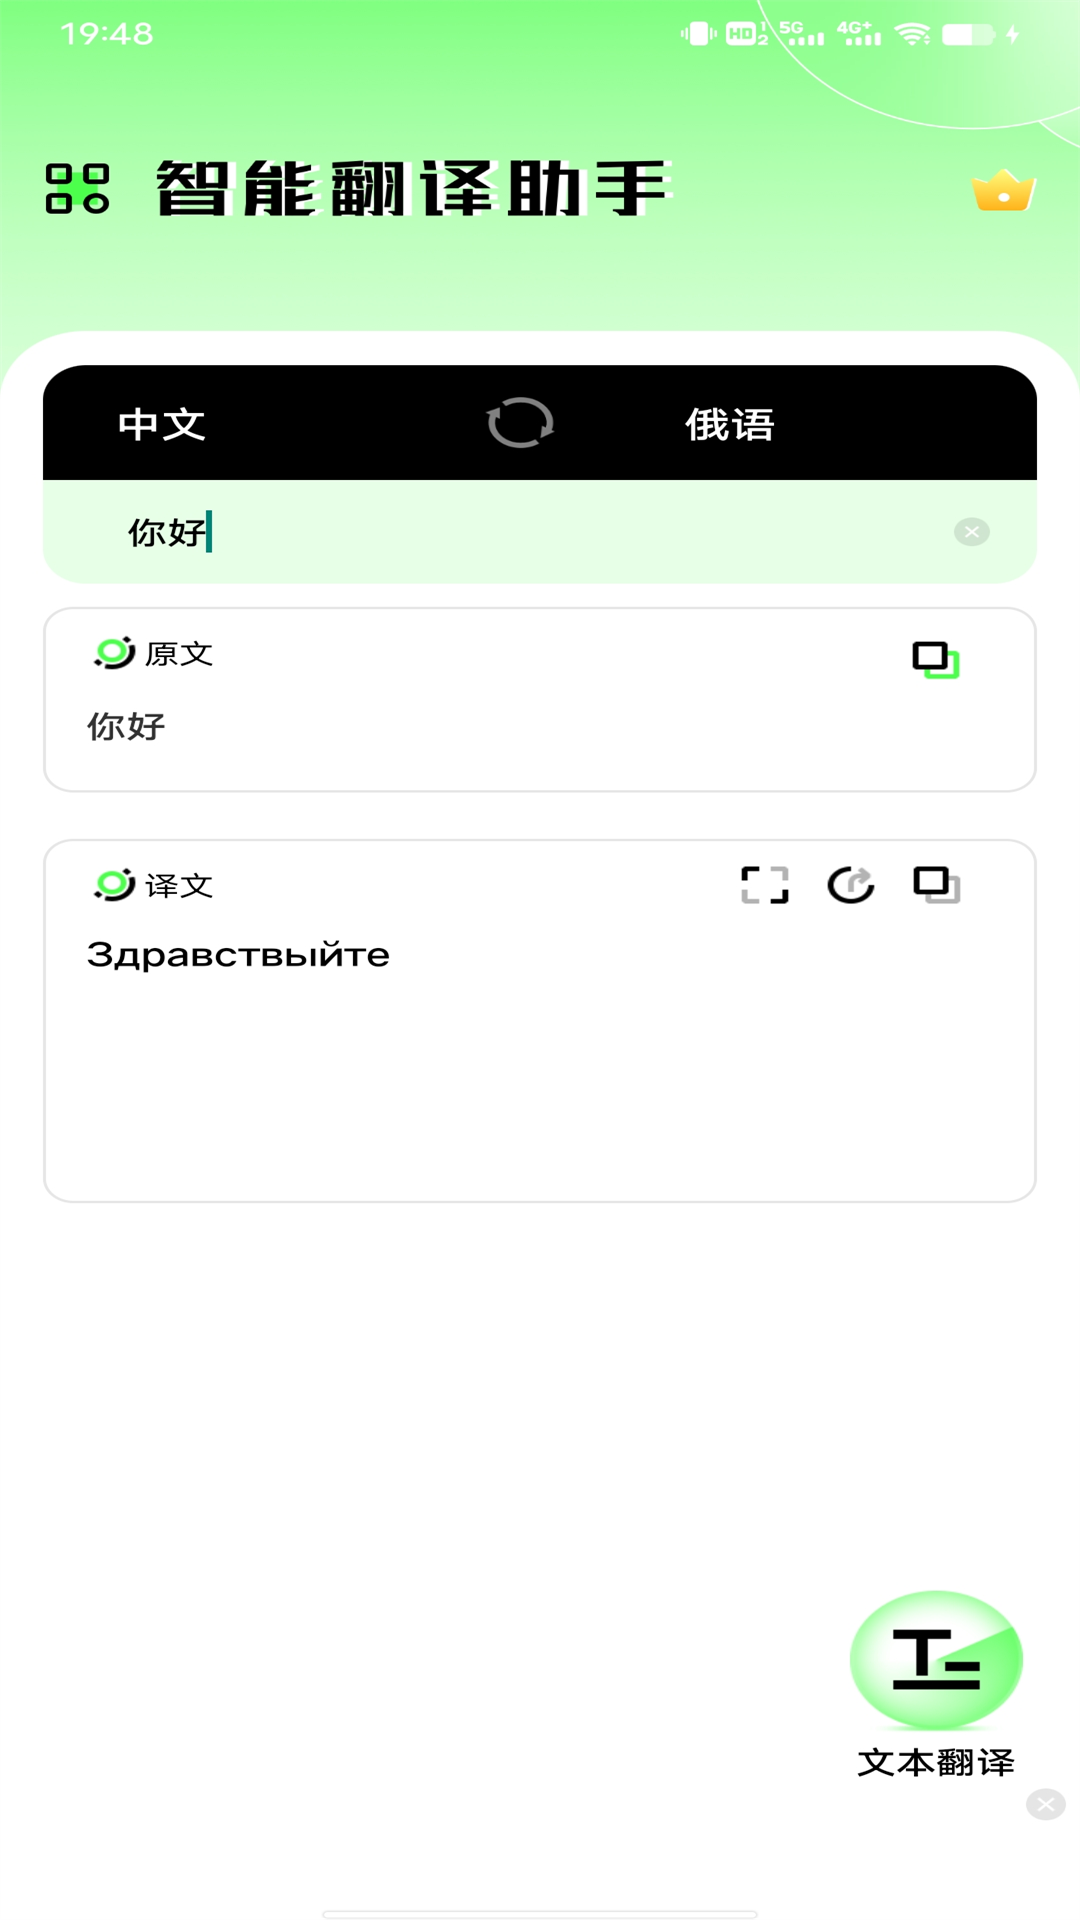 俄语翻译器v1.0.0截图4